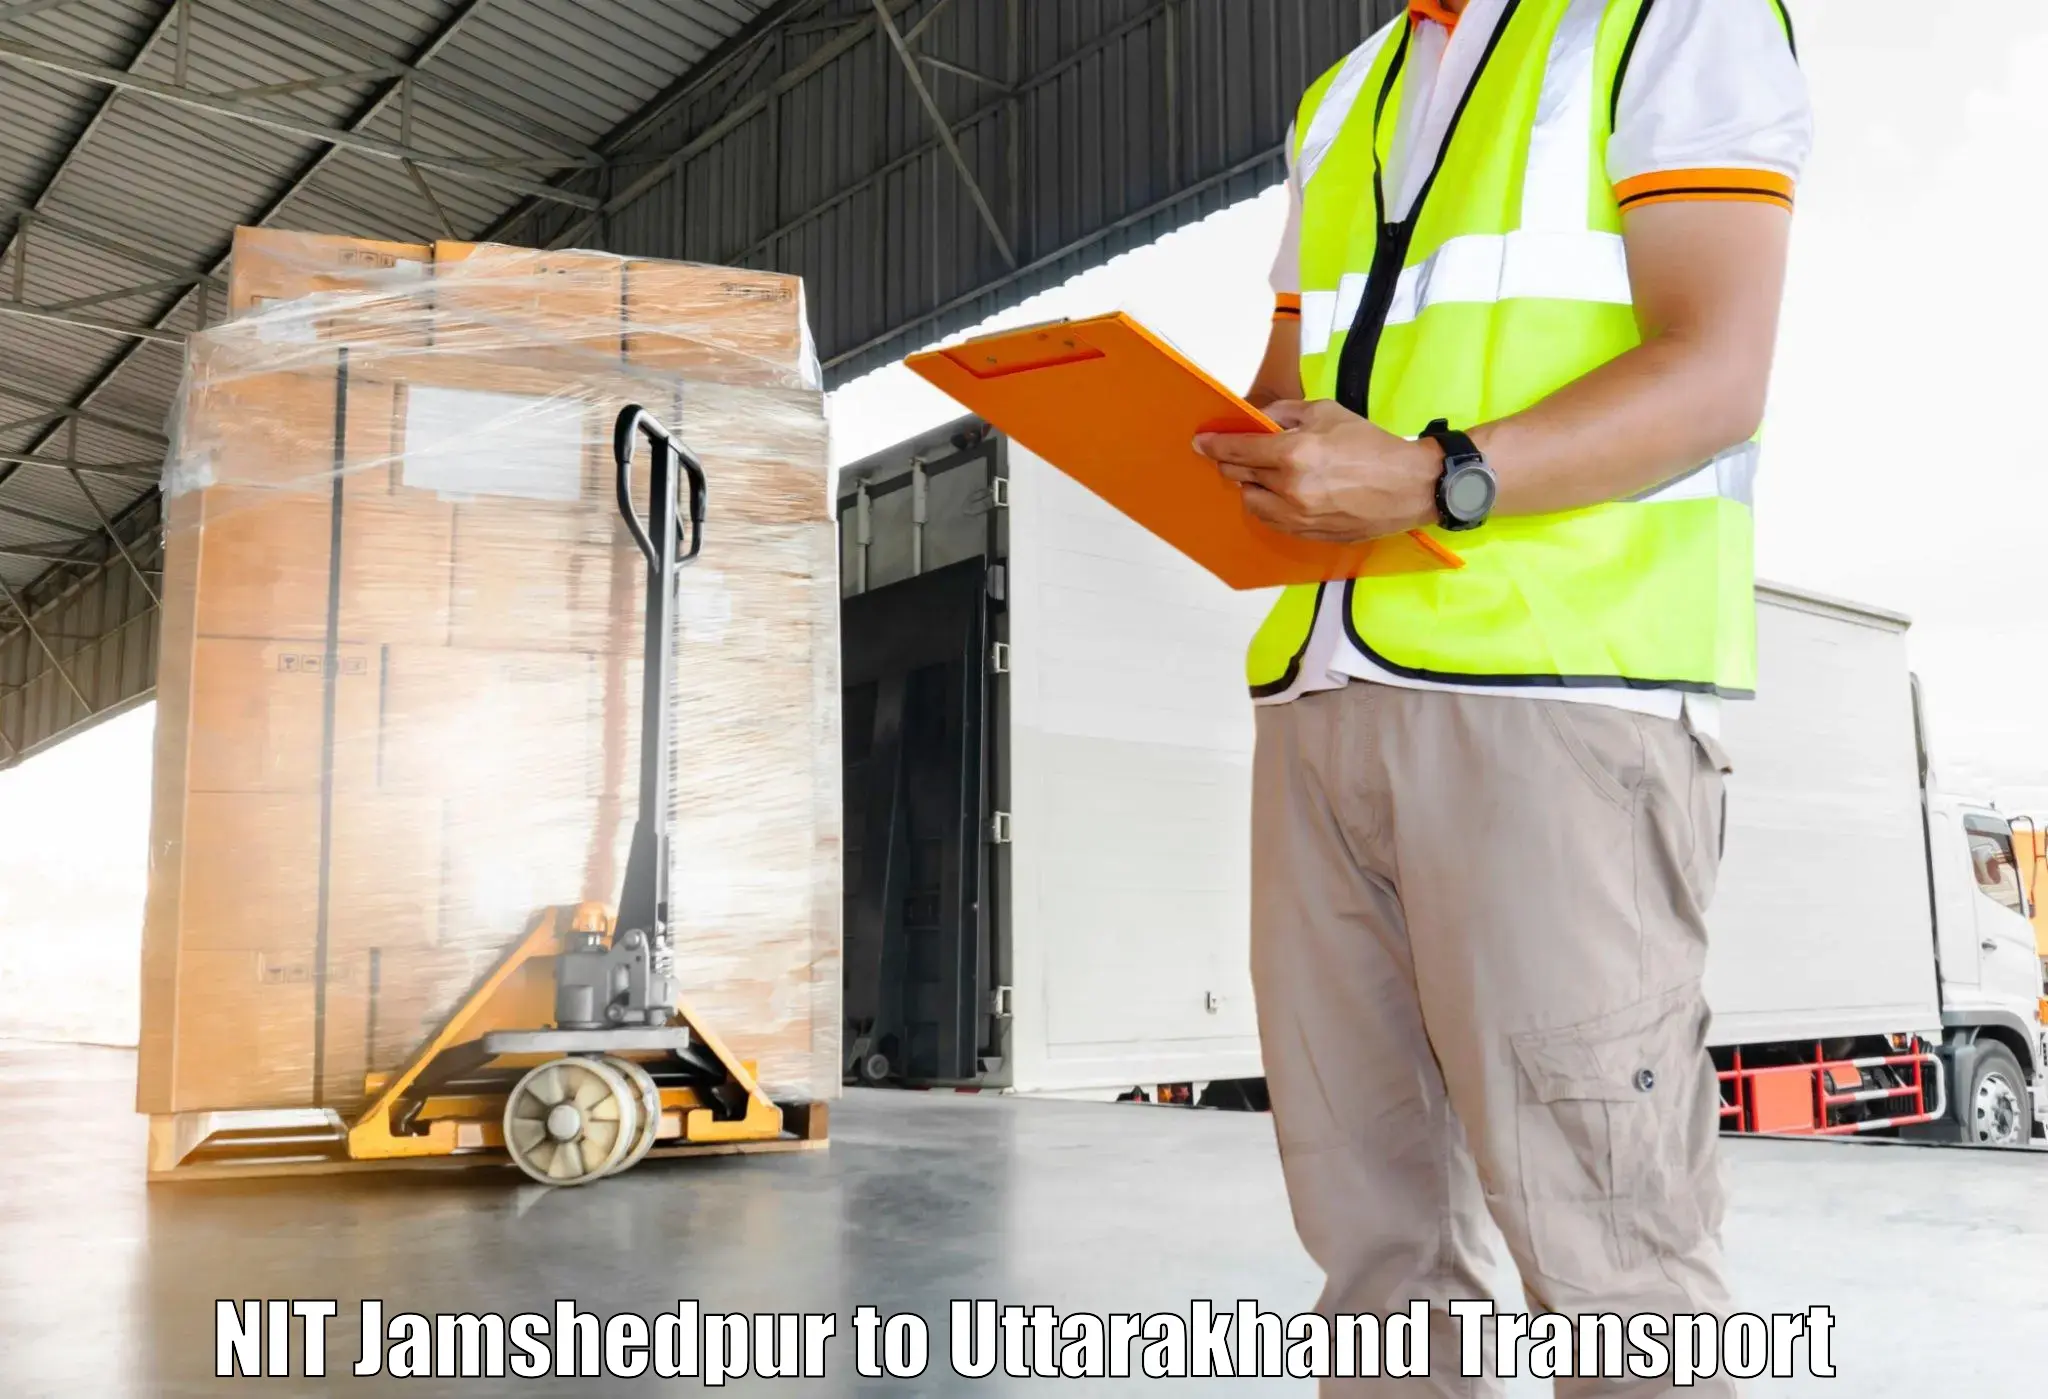 Furniture transport service NIT Jamshedpur to Pithoragarh